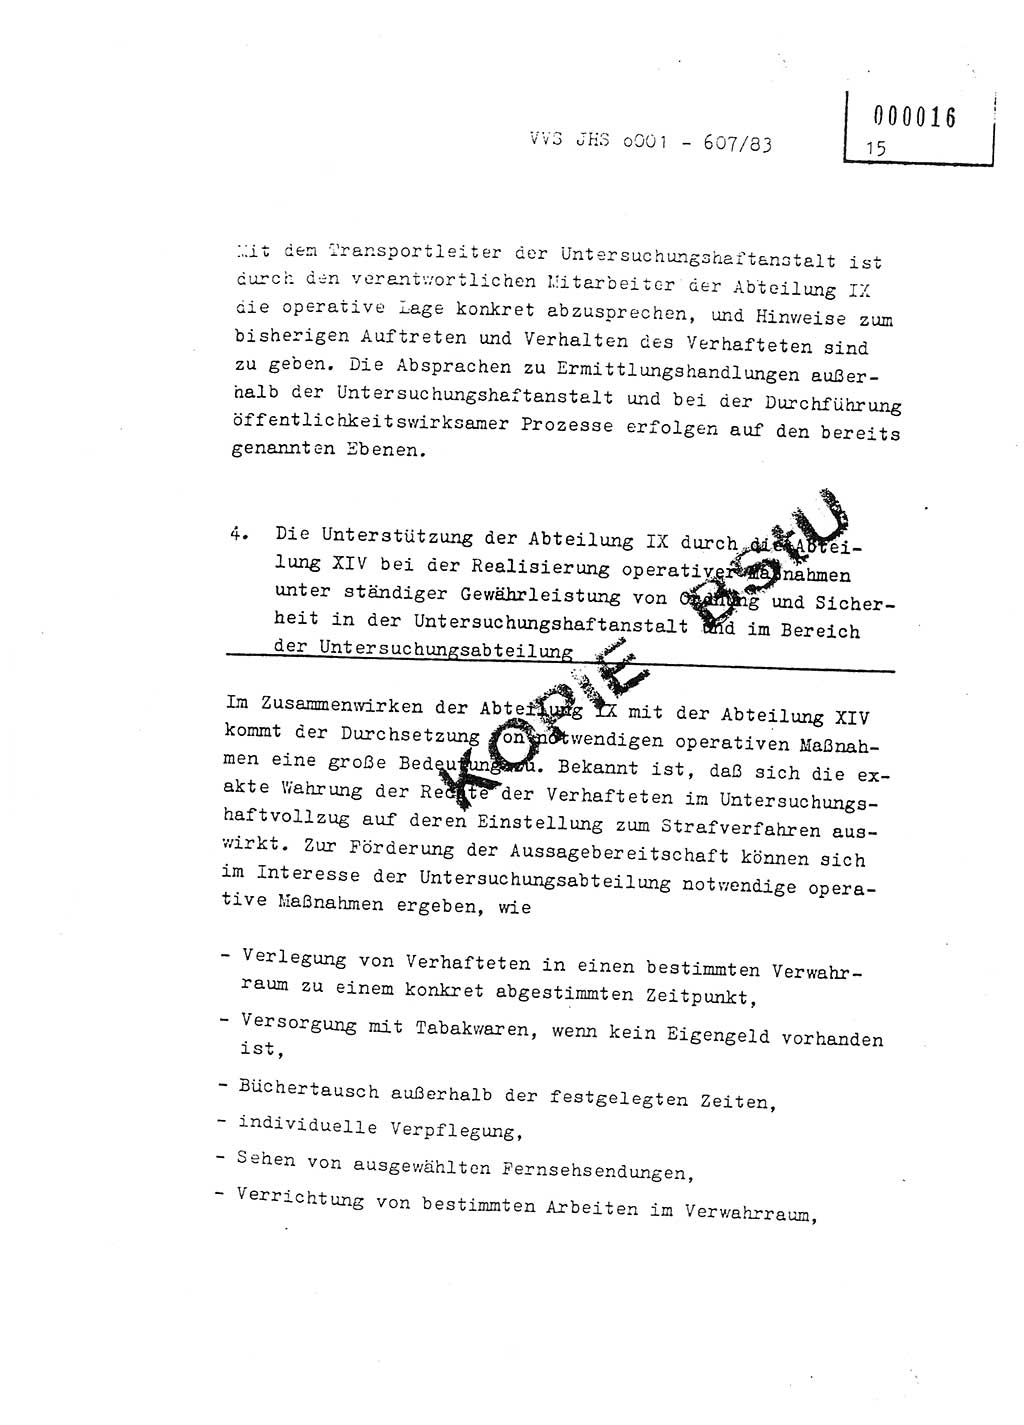 Fachschulabschlußarbeit Oberleutnant Hans-Joachim Saltmann (BV Rostock Abt. ⅩⅣ), Ministerium für Staatssicherheit (MfS) [Deutsche Demokratische Republik (DDR)], Juristische Hochschule (JHS), Vertrauliche Verschlußsache (VVS) o001-607/83, Potsdam 1983, Seite 15 (FS-Abschl.-Arb. MfS DDR JHS VVS o001-607/83 1983, S. 15)